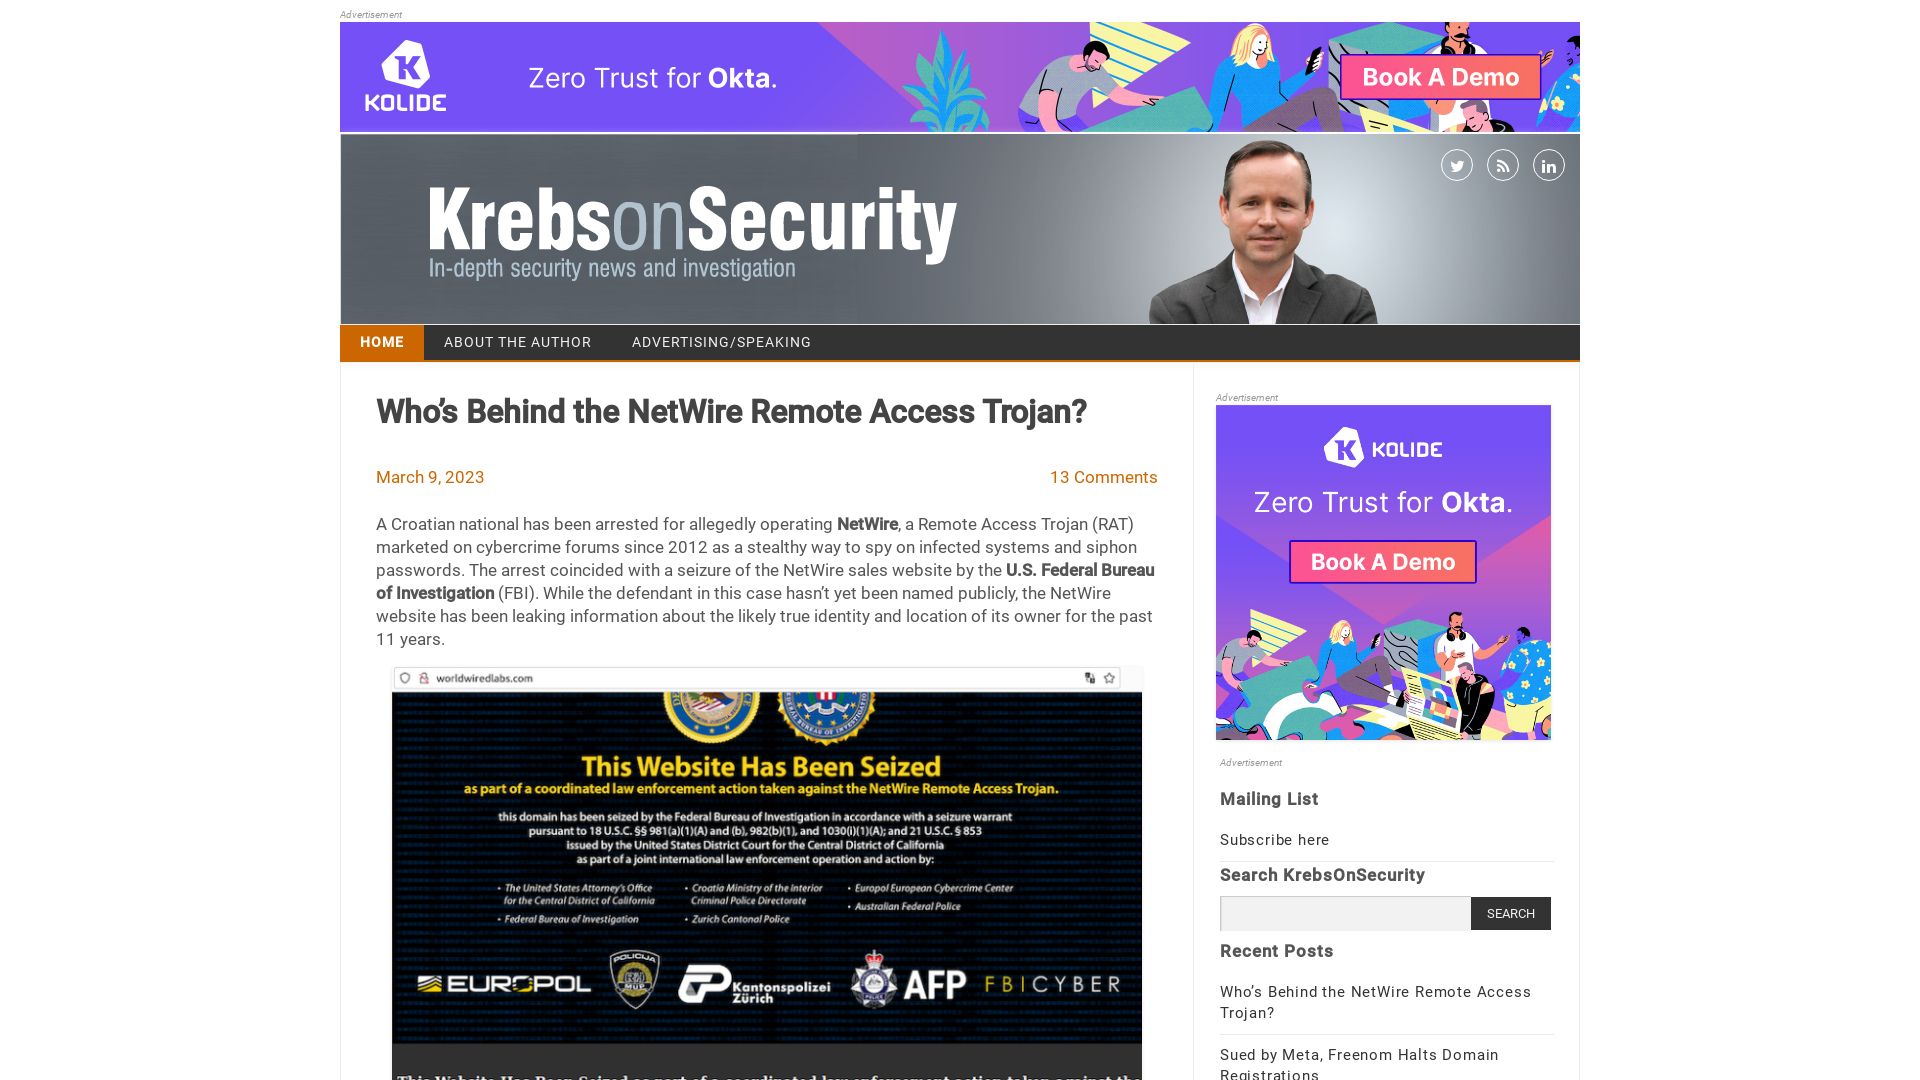 Estado web krebsonsecurity.com está   ONLINE